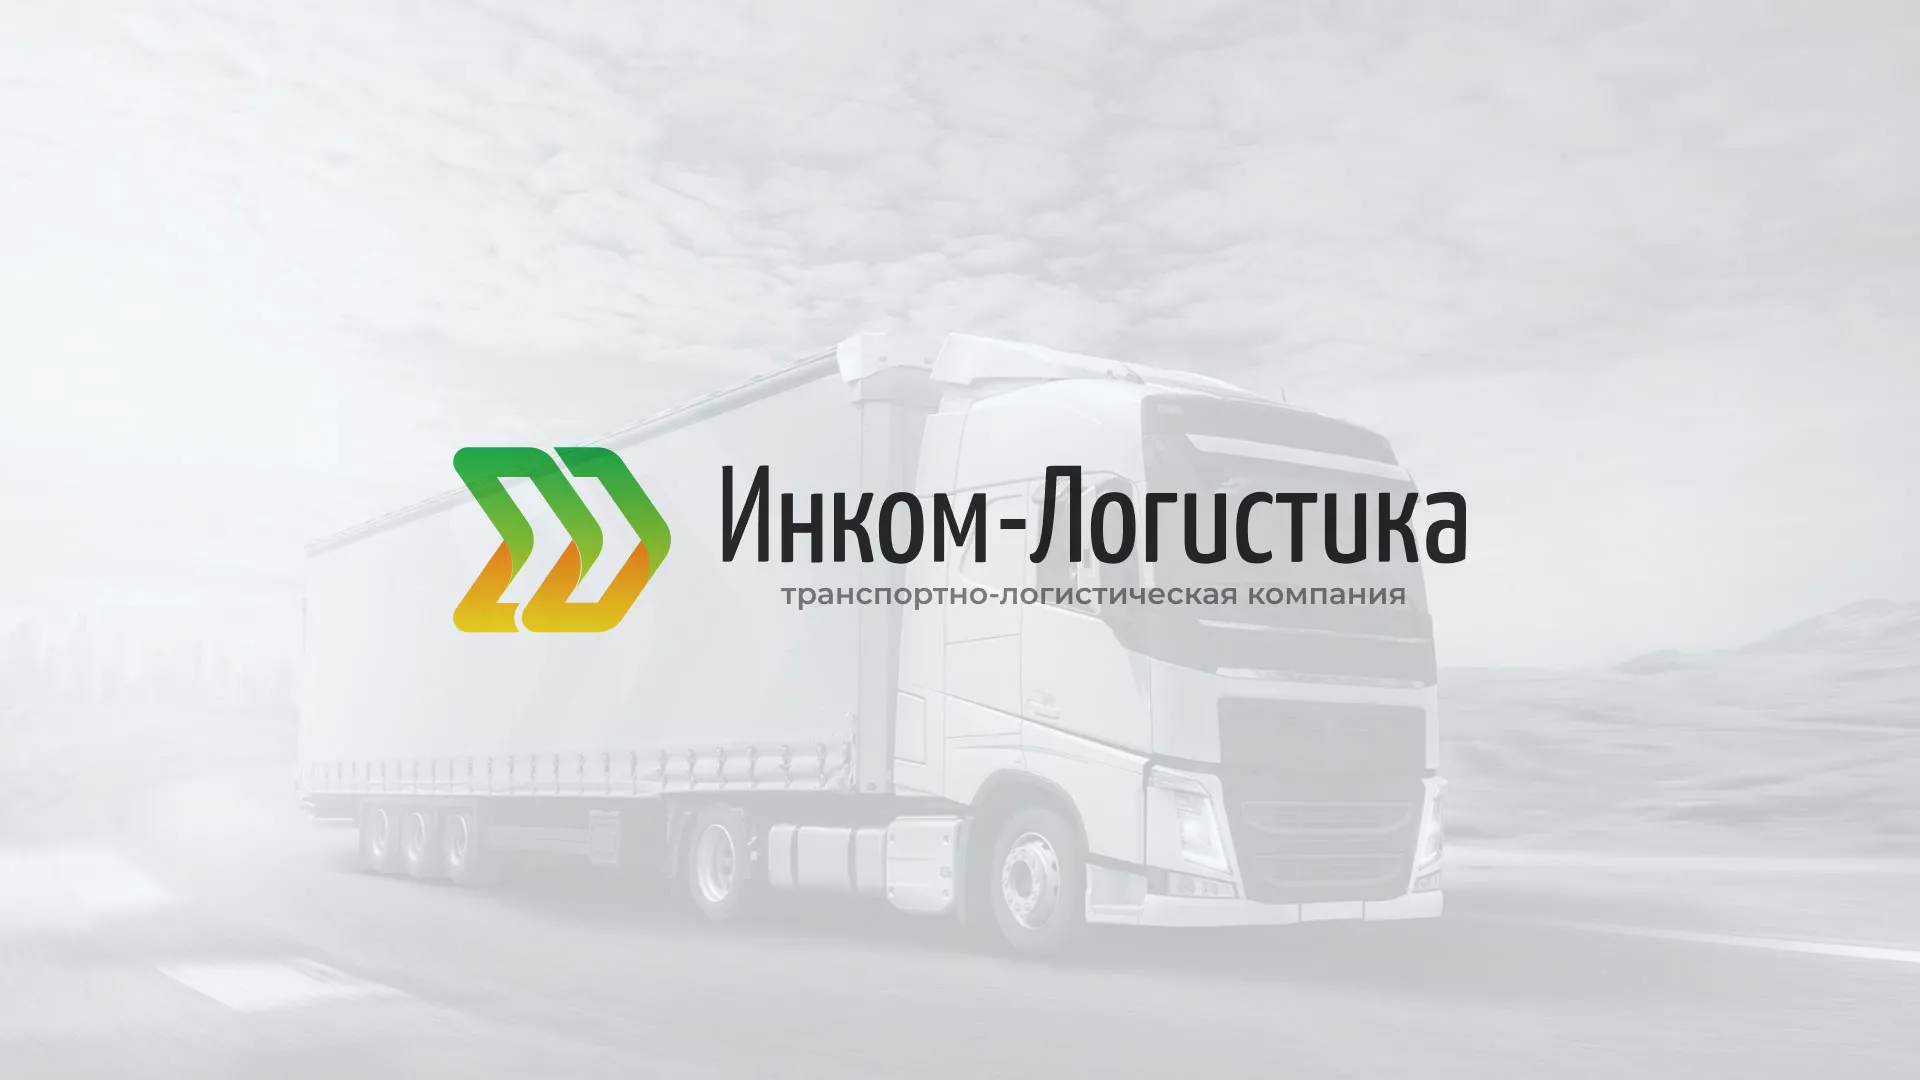 Разработка логотипа и сайта компании «Инком-Логистика» в Жуковском